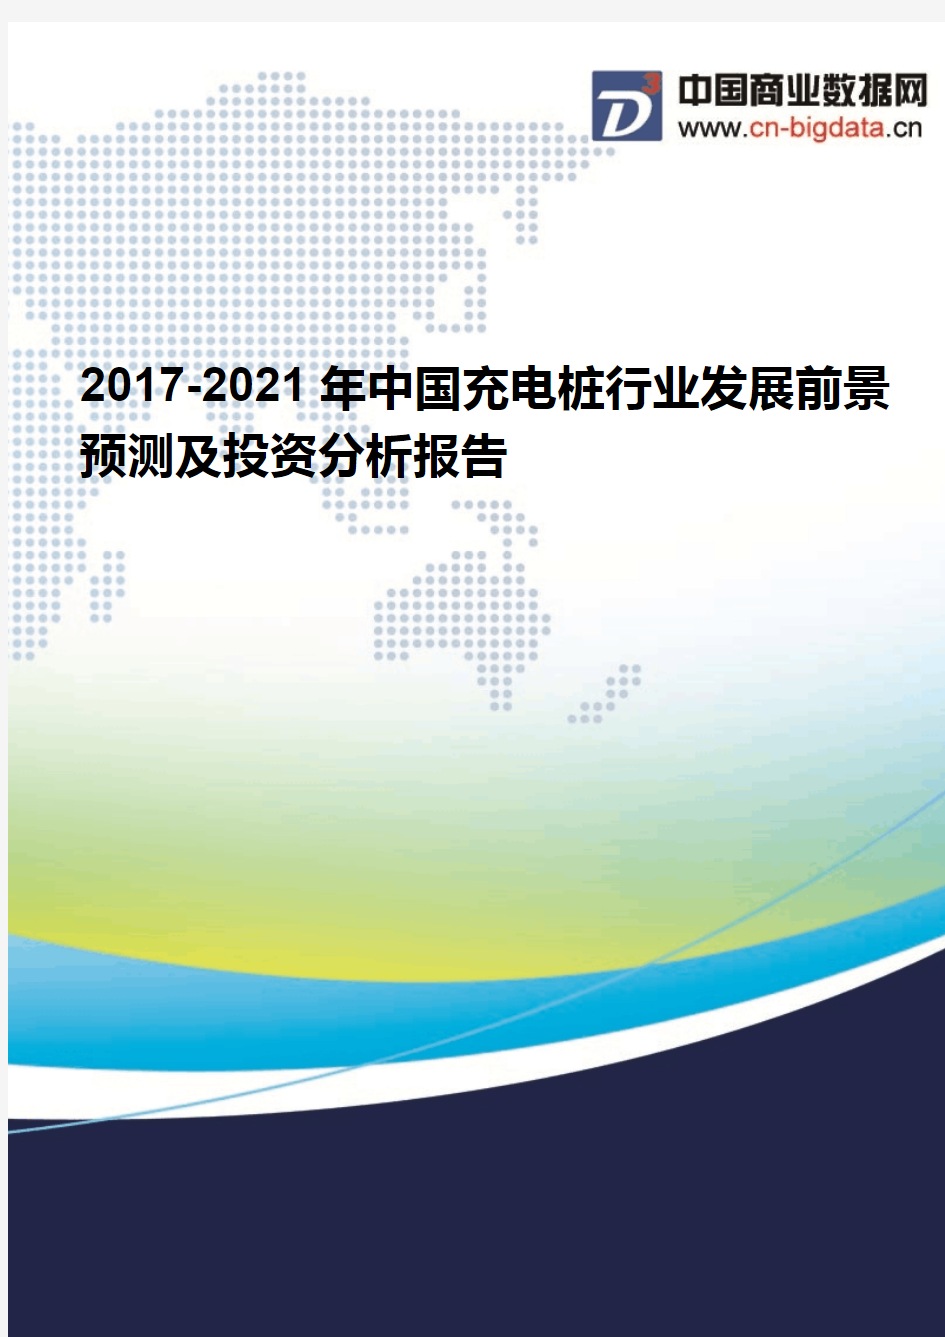 2017-2021年中国充电桩行业发展前景预测及投资分析报告